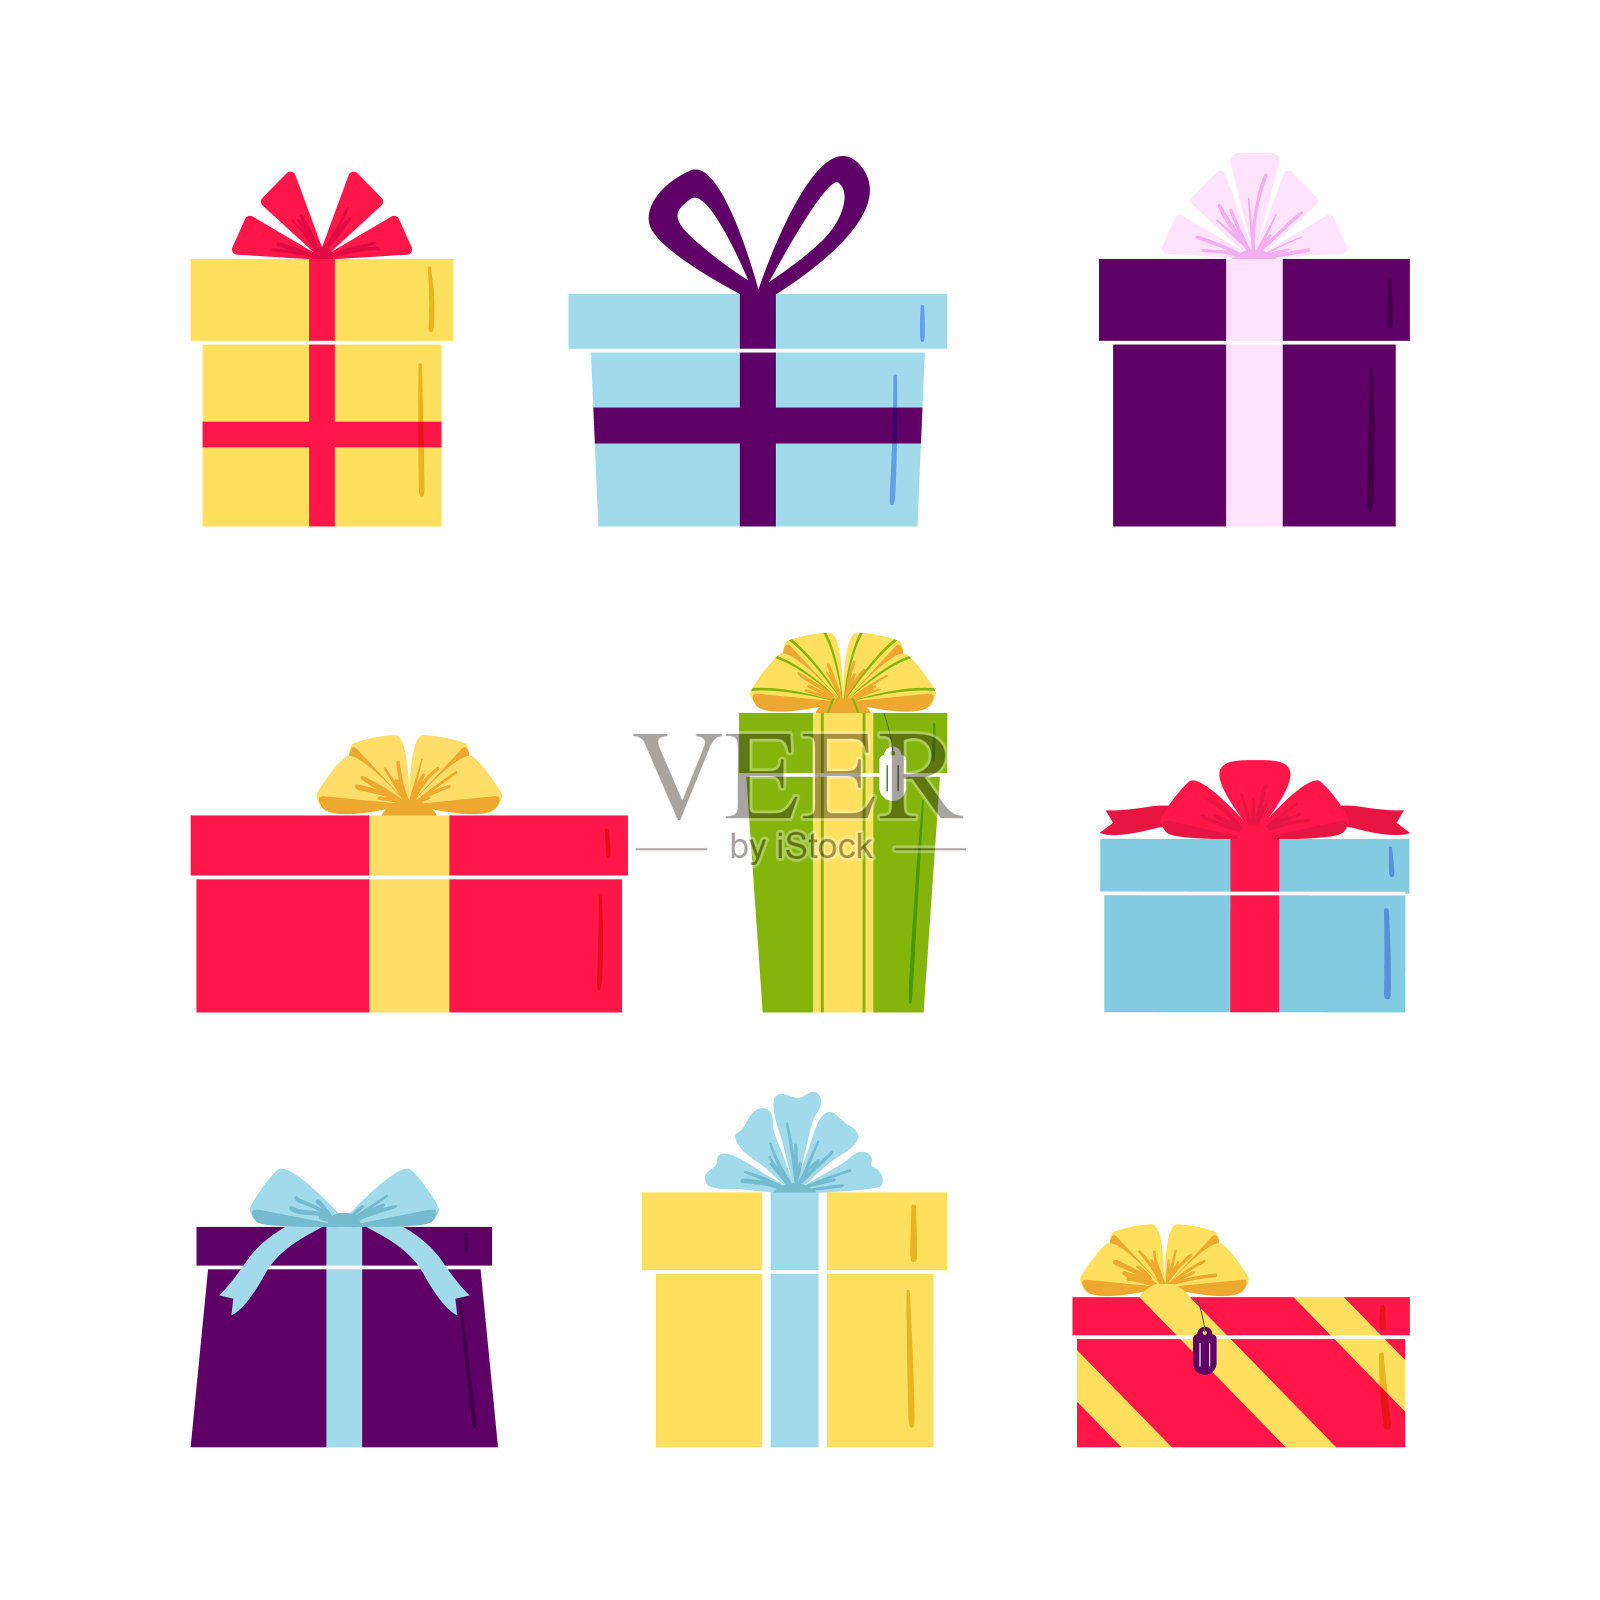 一套可爱的彩色礼品盒。带着丝带和蝴蝶结的礼物。明信片、贺卡。圣诞节或新年礼物设计元素图片